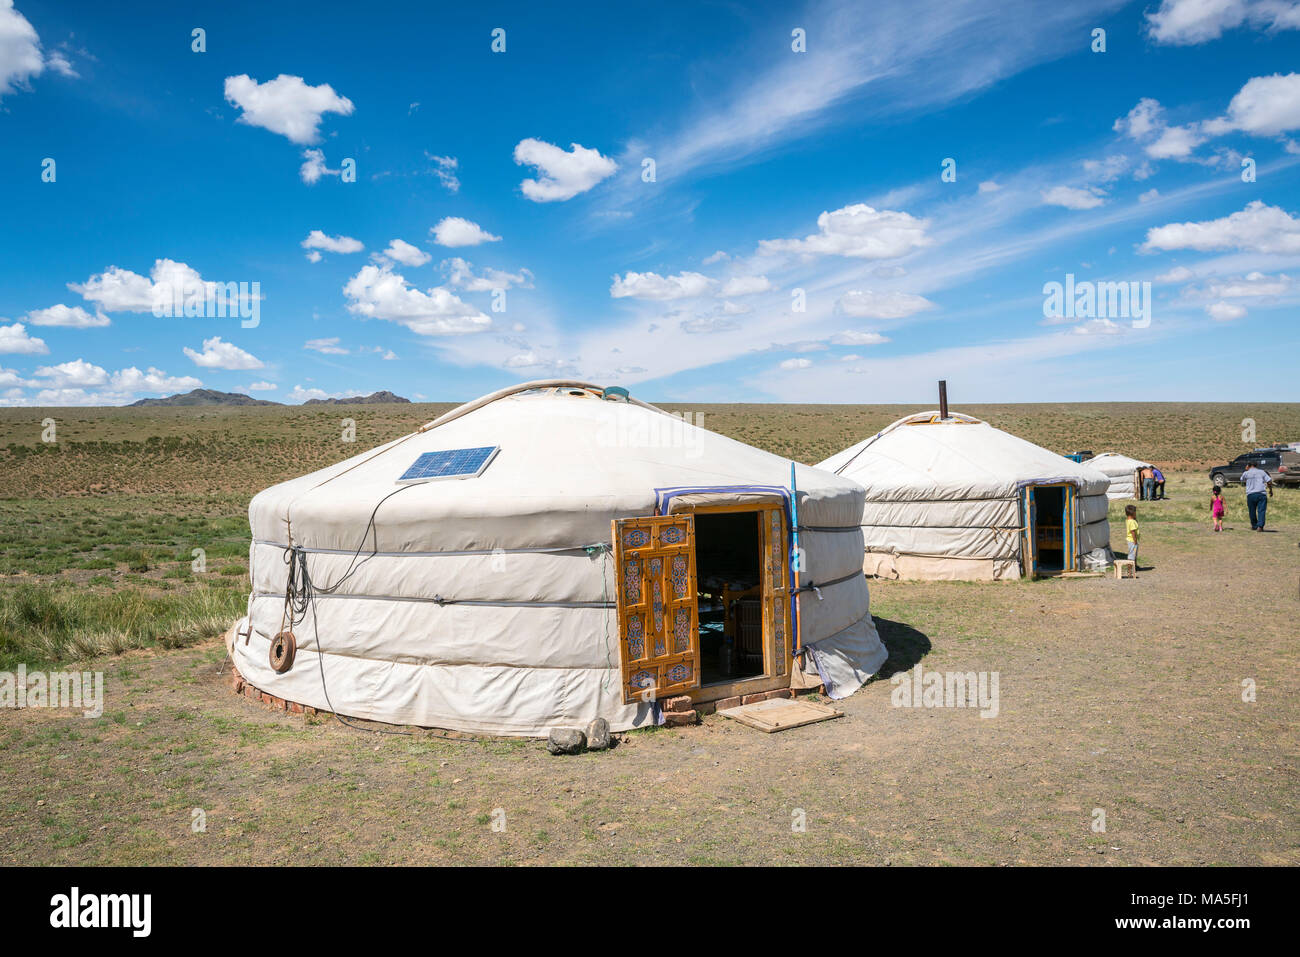 Gers nomades traditionnelles mongoles. Bayandalai district, province sud de Gobi, en Mongolie. Banque D'Images